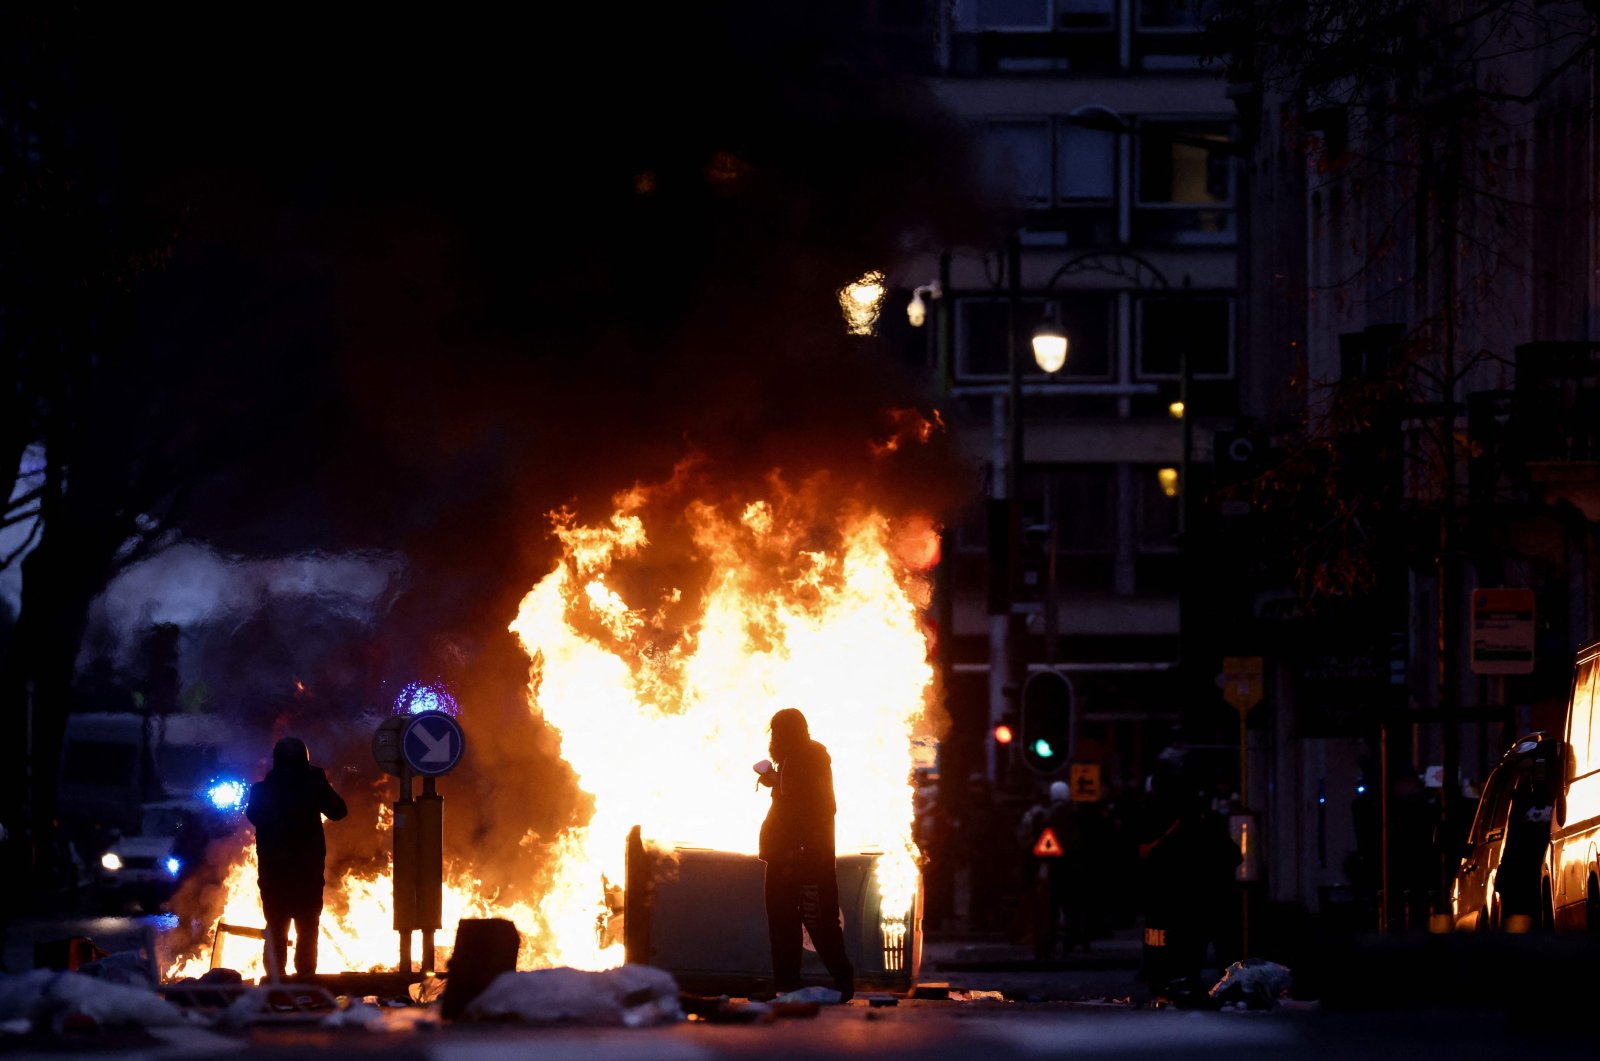 Protes lagi pembatasan COVID-19 berubah menjadi kekerasan di Brussel